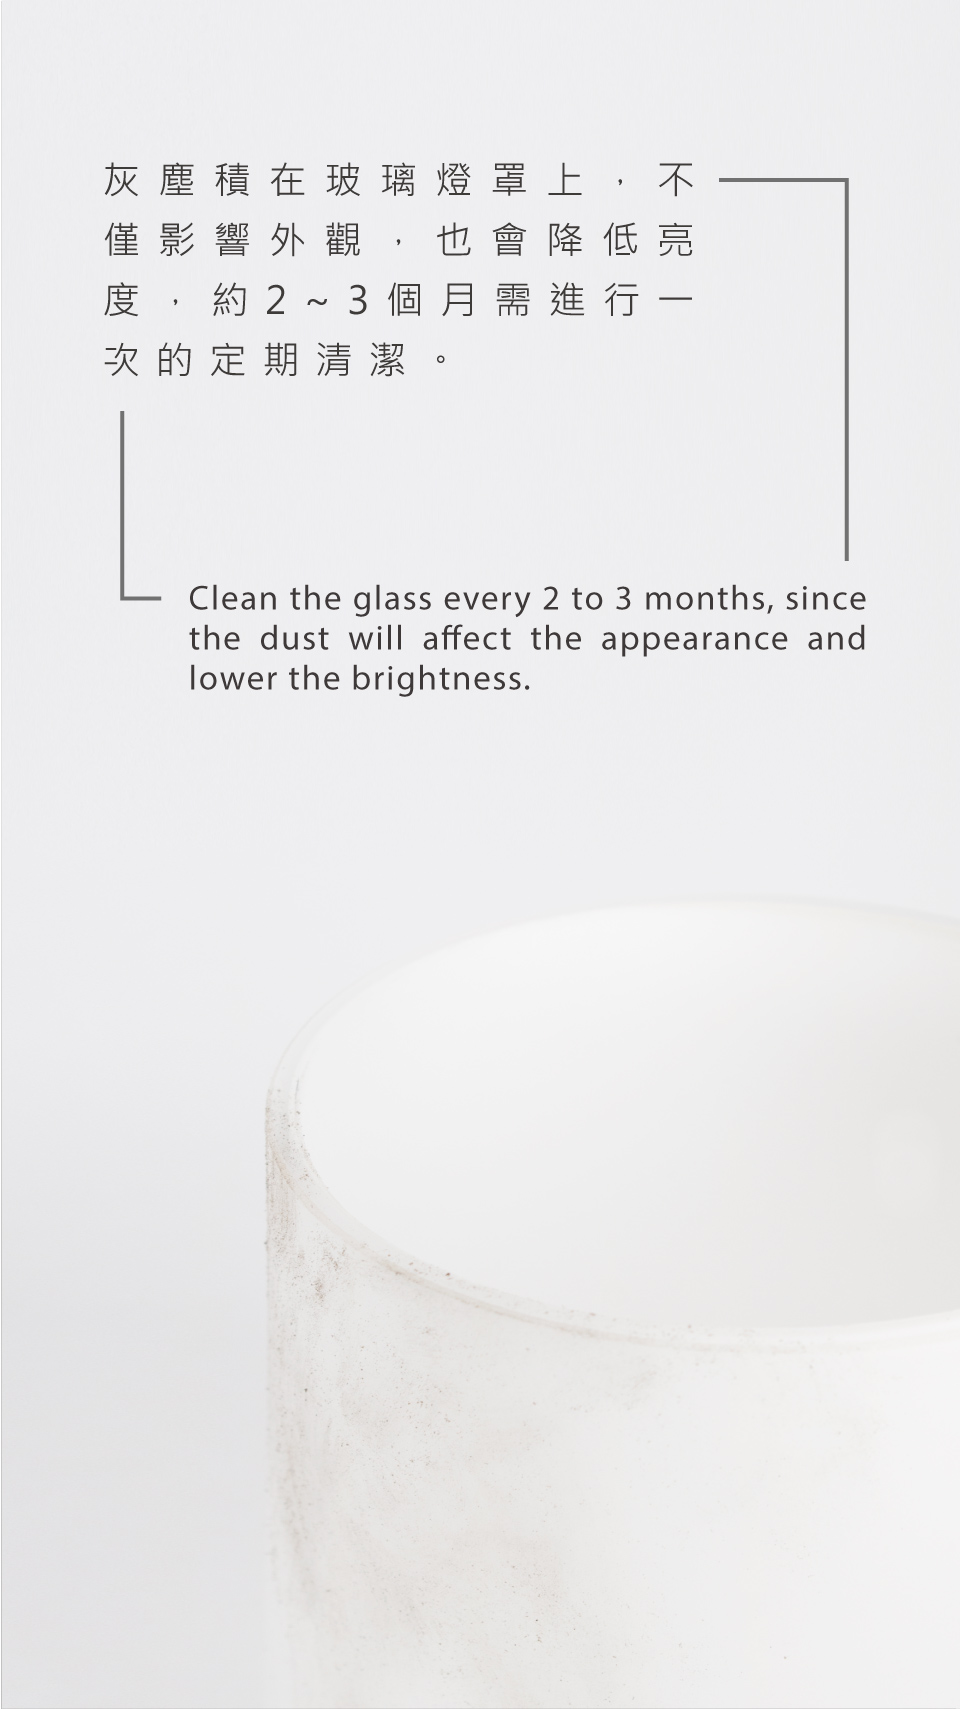 燈具清潔保養指南-玻璃燈罩2